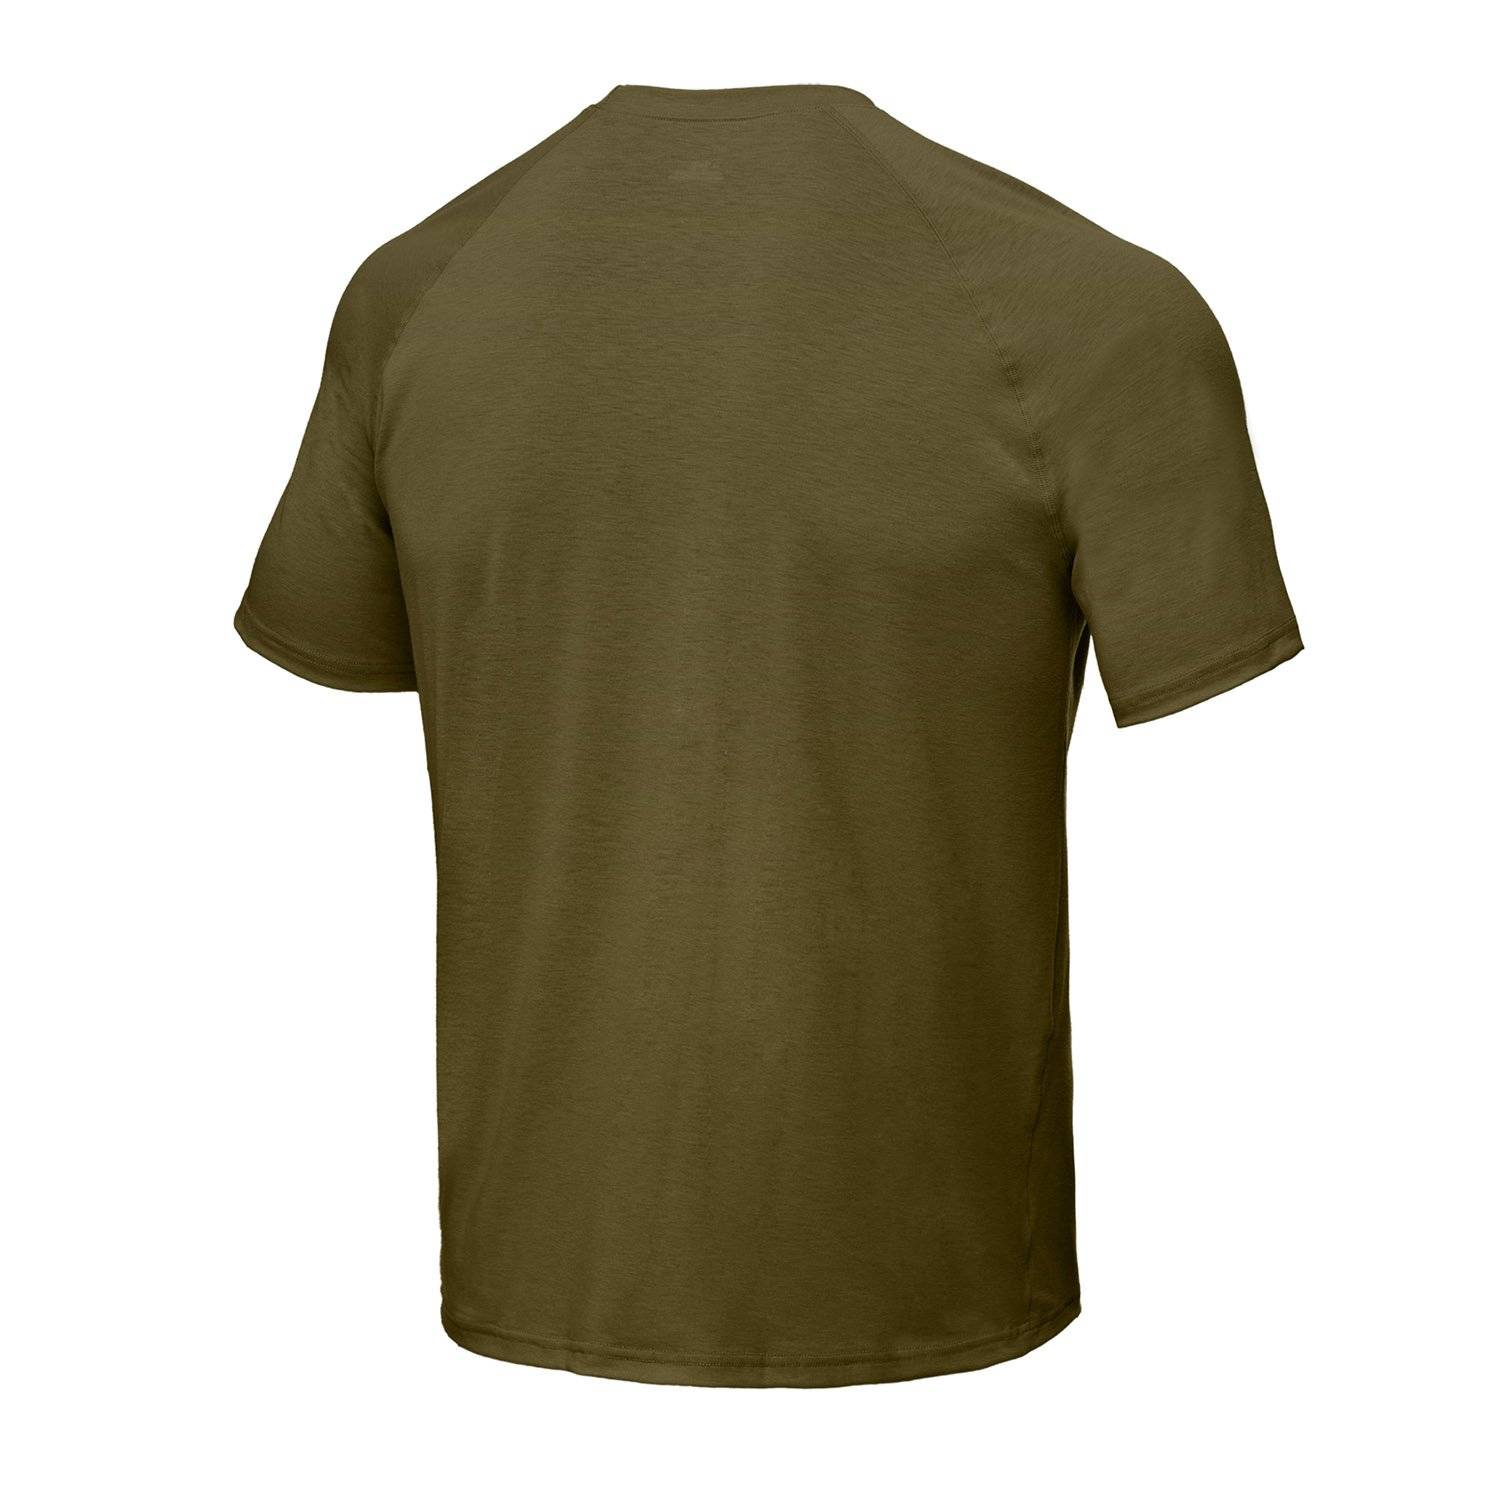 Under Armour Tactical Tech Short Sleeve T-Shirt